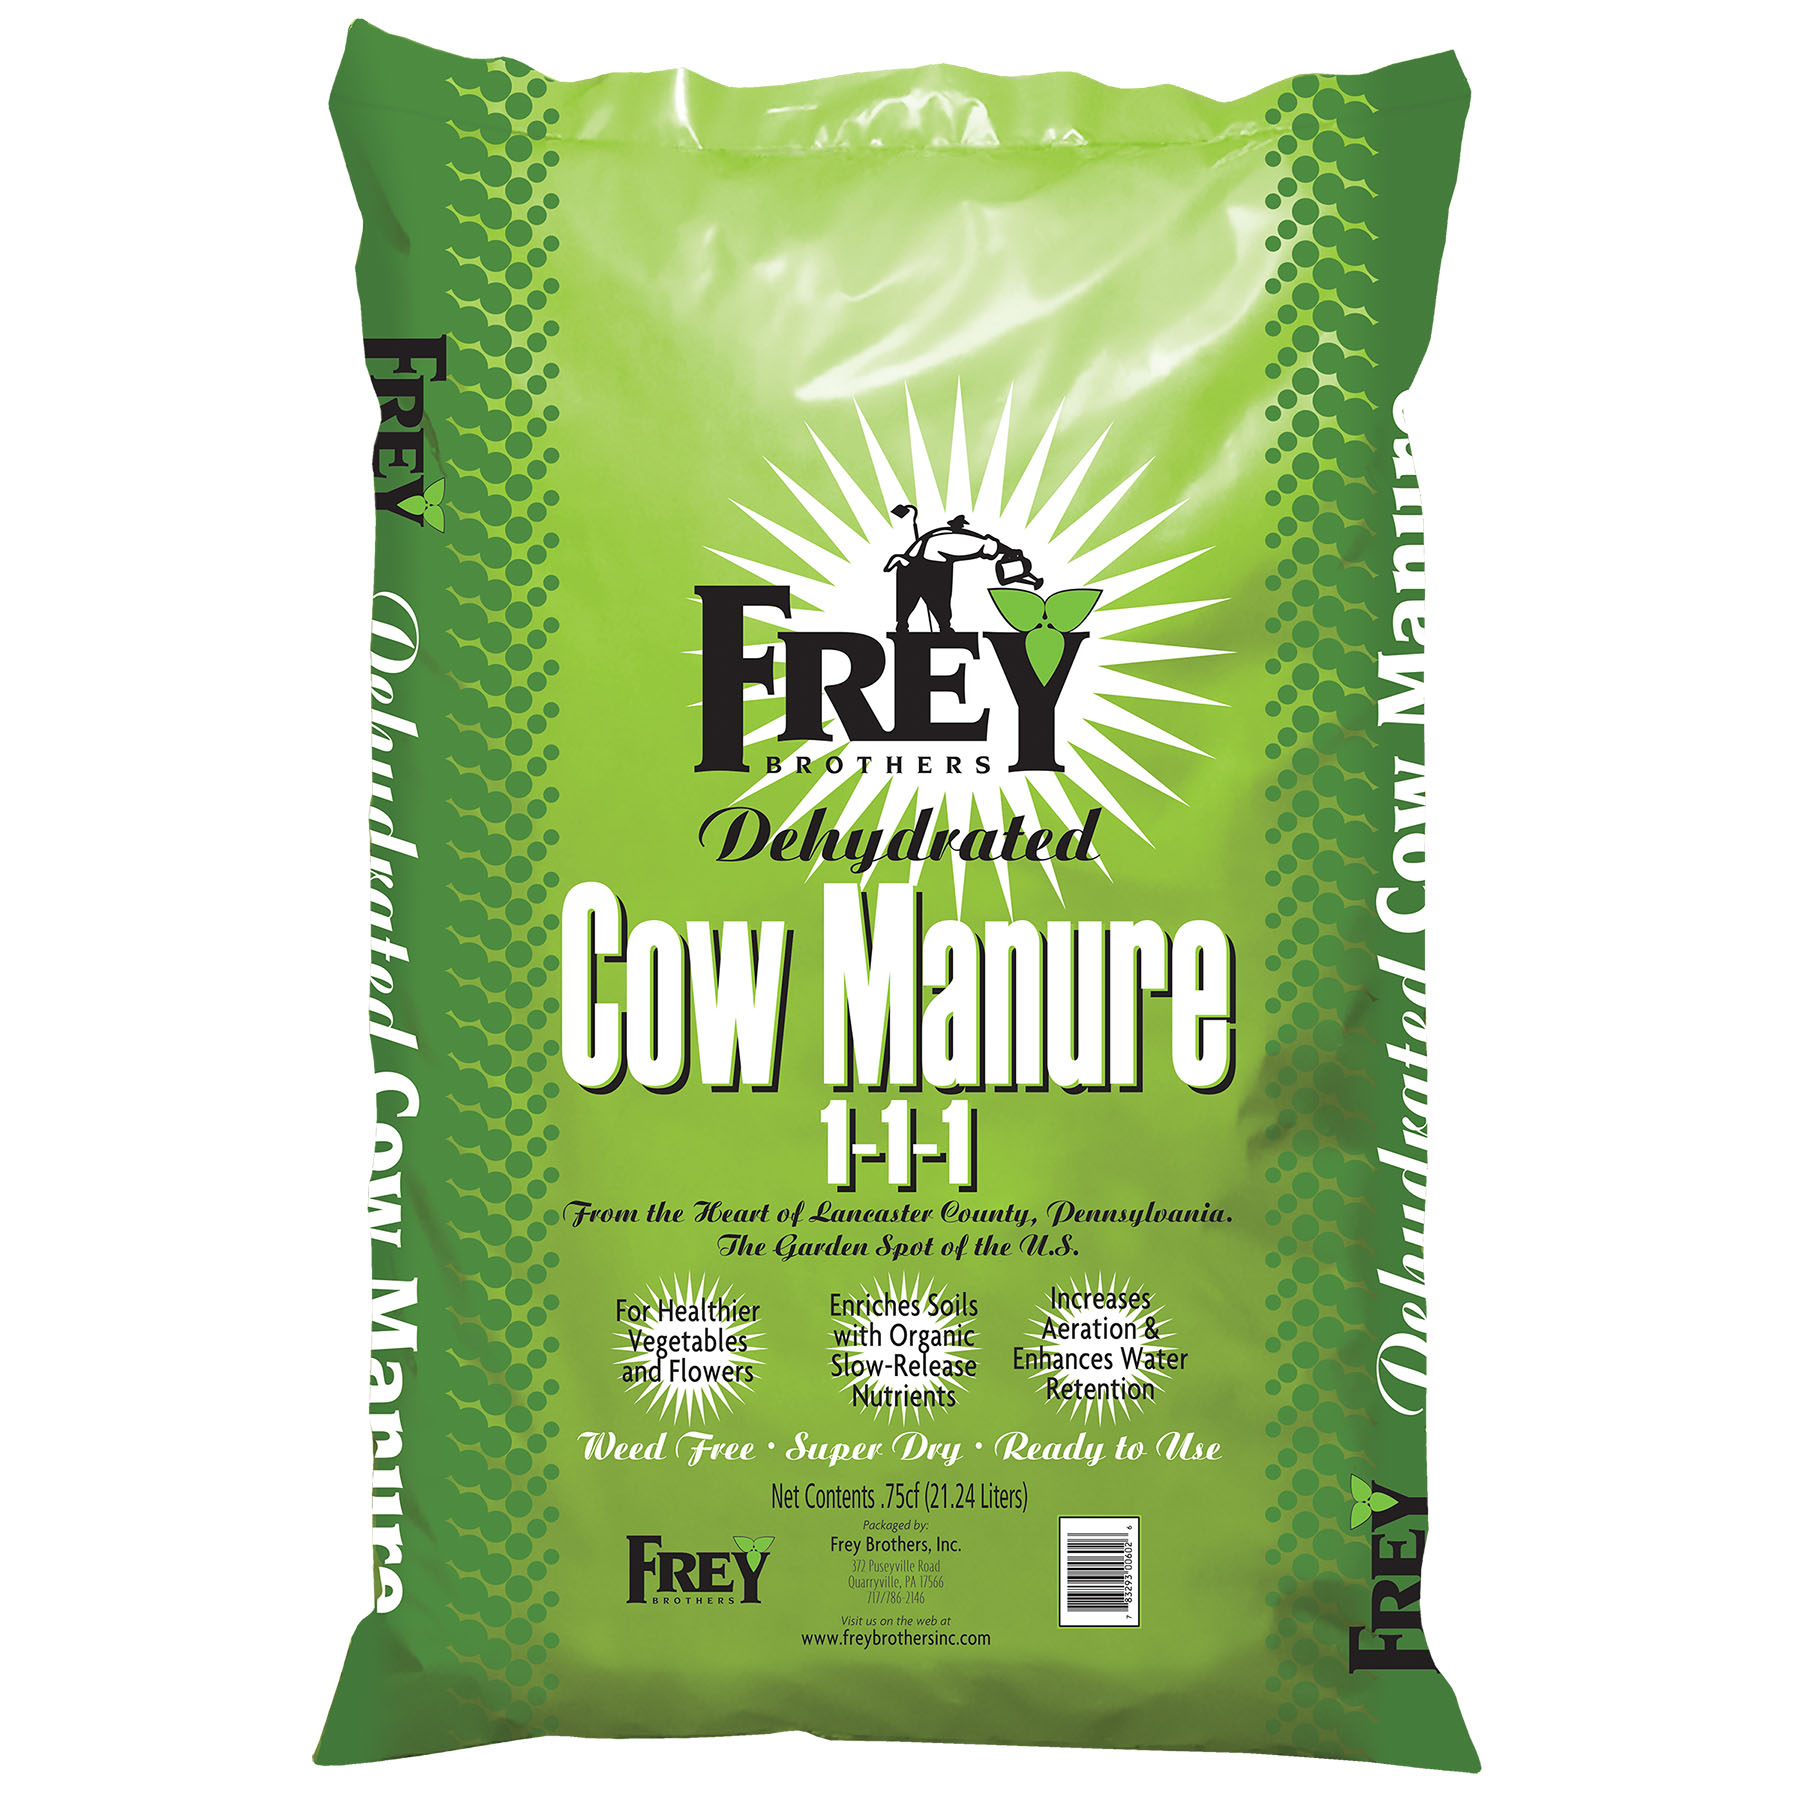 Frey Dehydrated Cow Manure 1-1-1 0.75 cu ft Bag - 75 per pallet - Potting Mix, Compost & Amendments